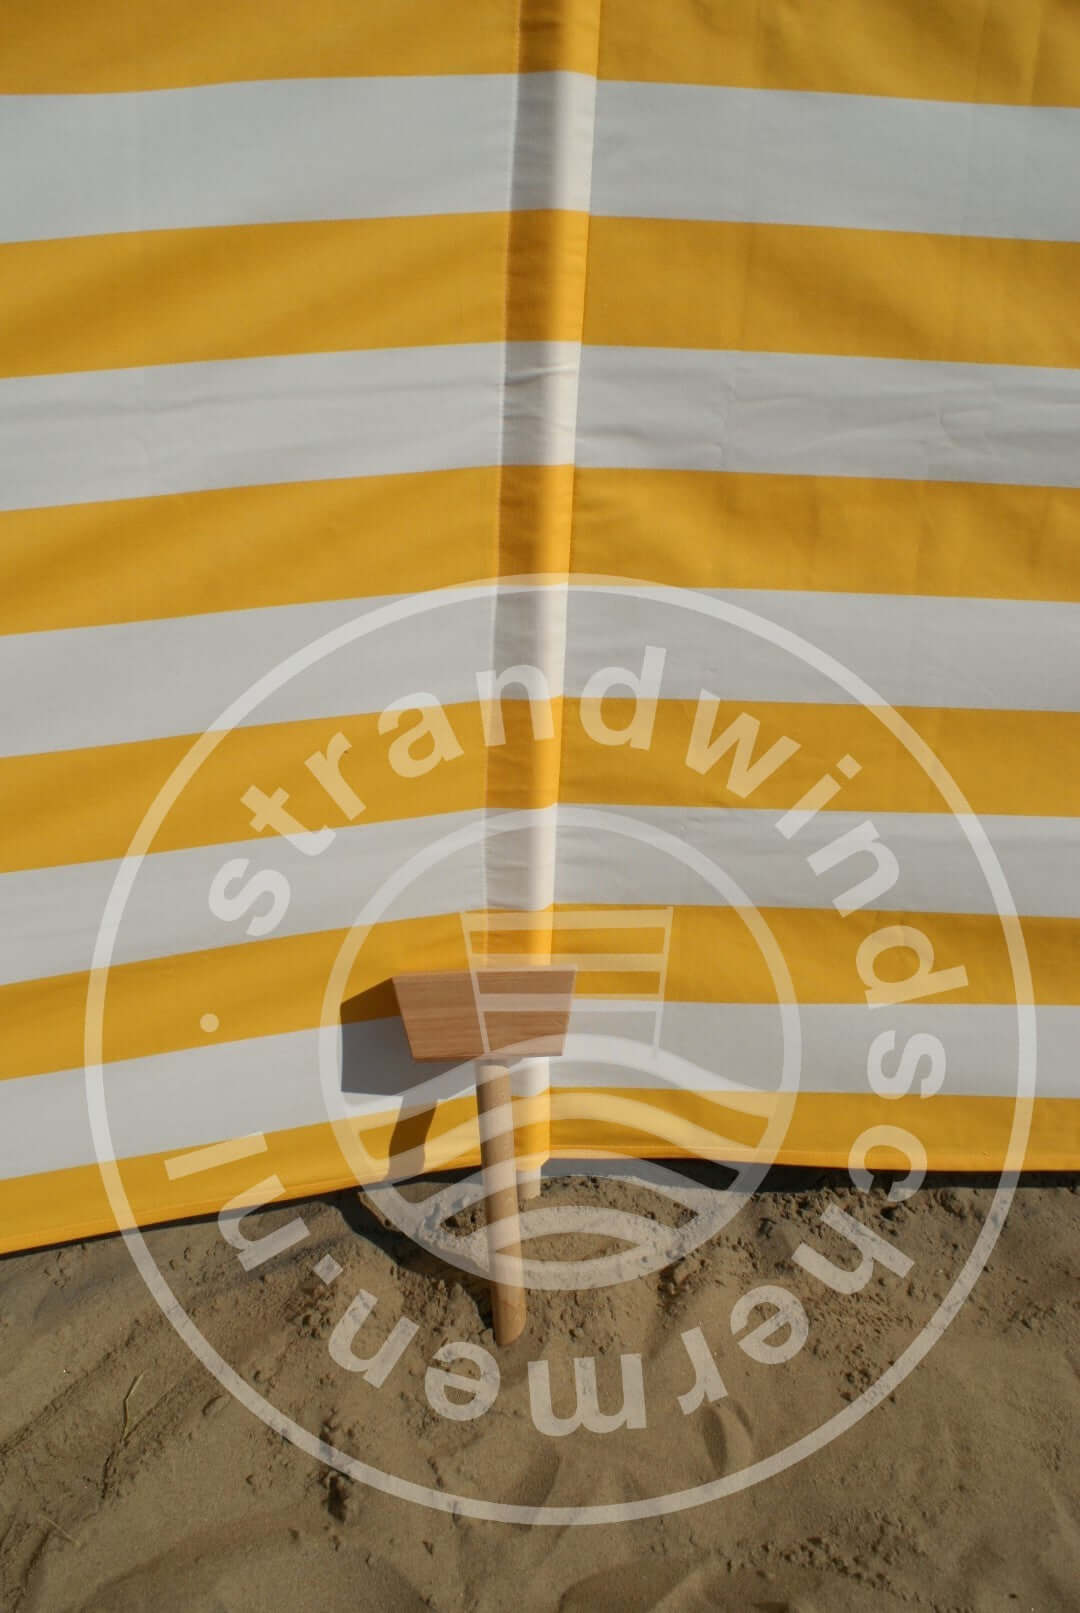 5 m gelb/weißer Dralon Windschutz – 5 m